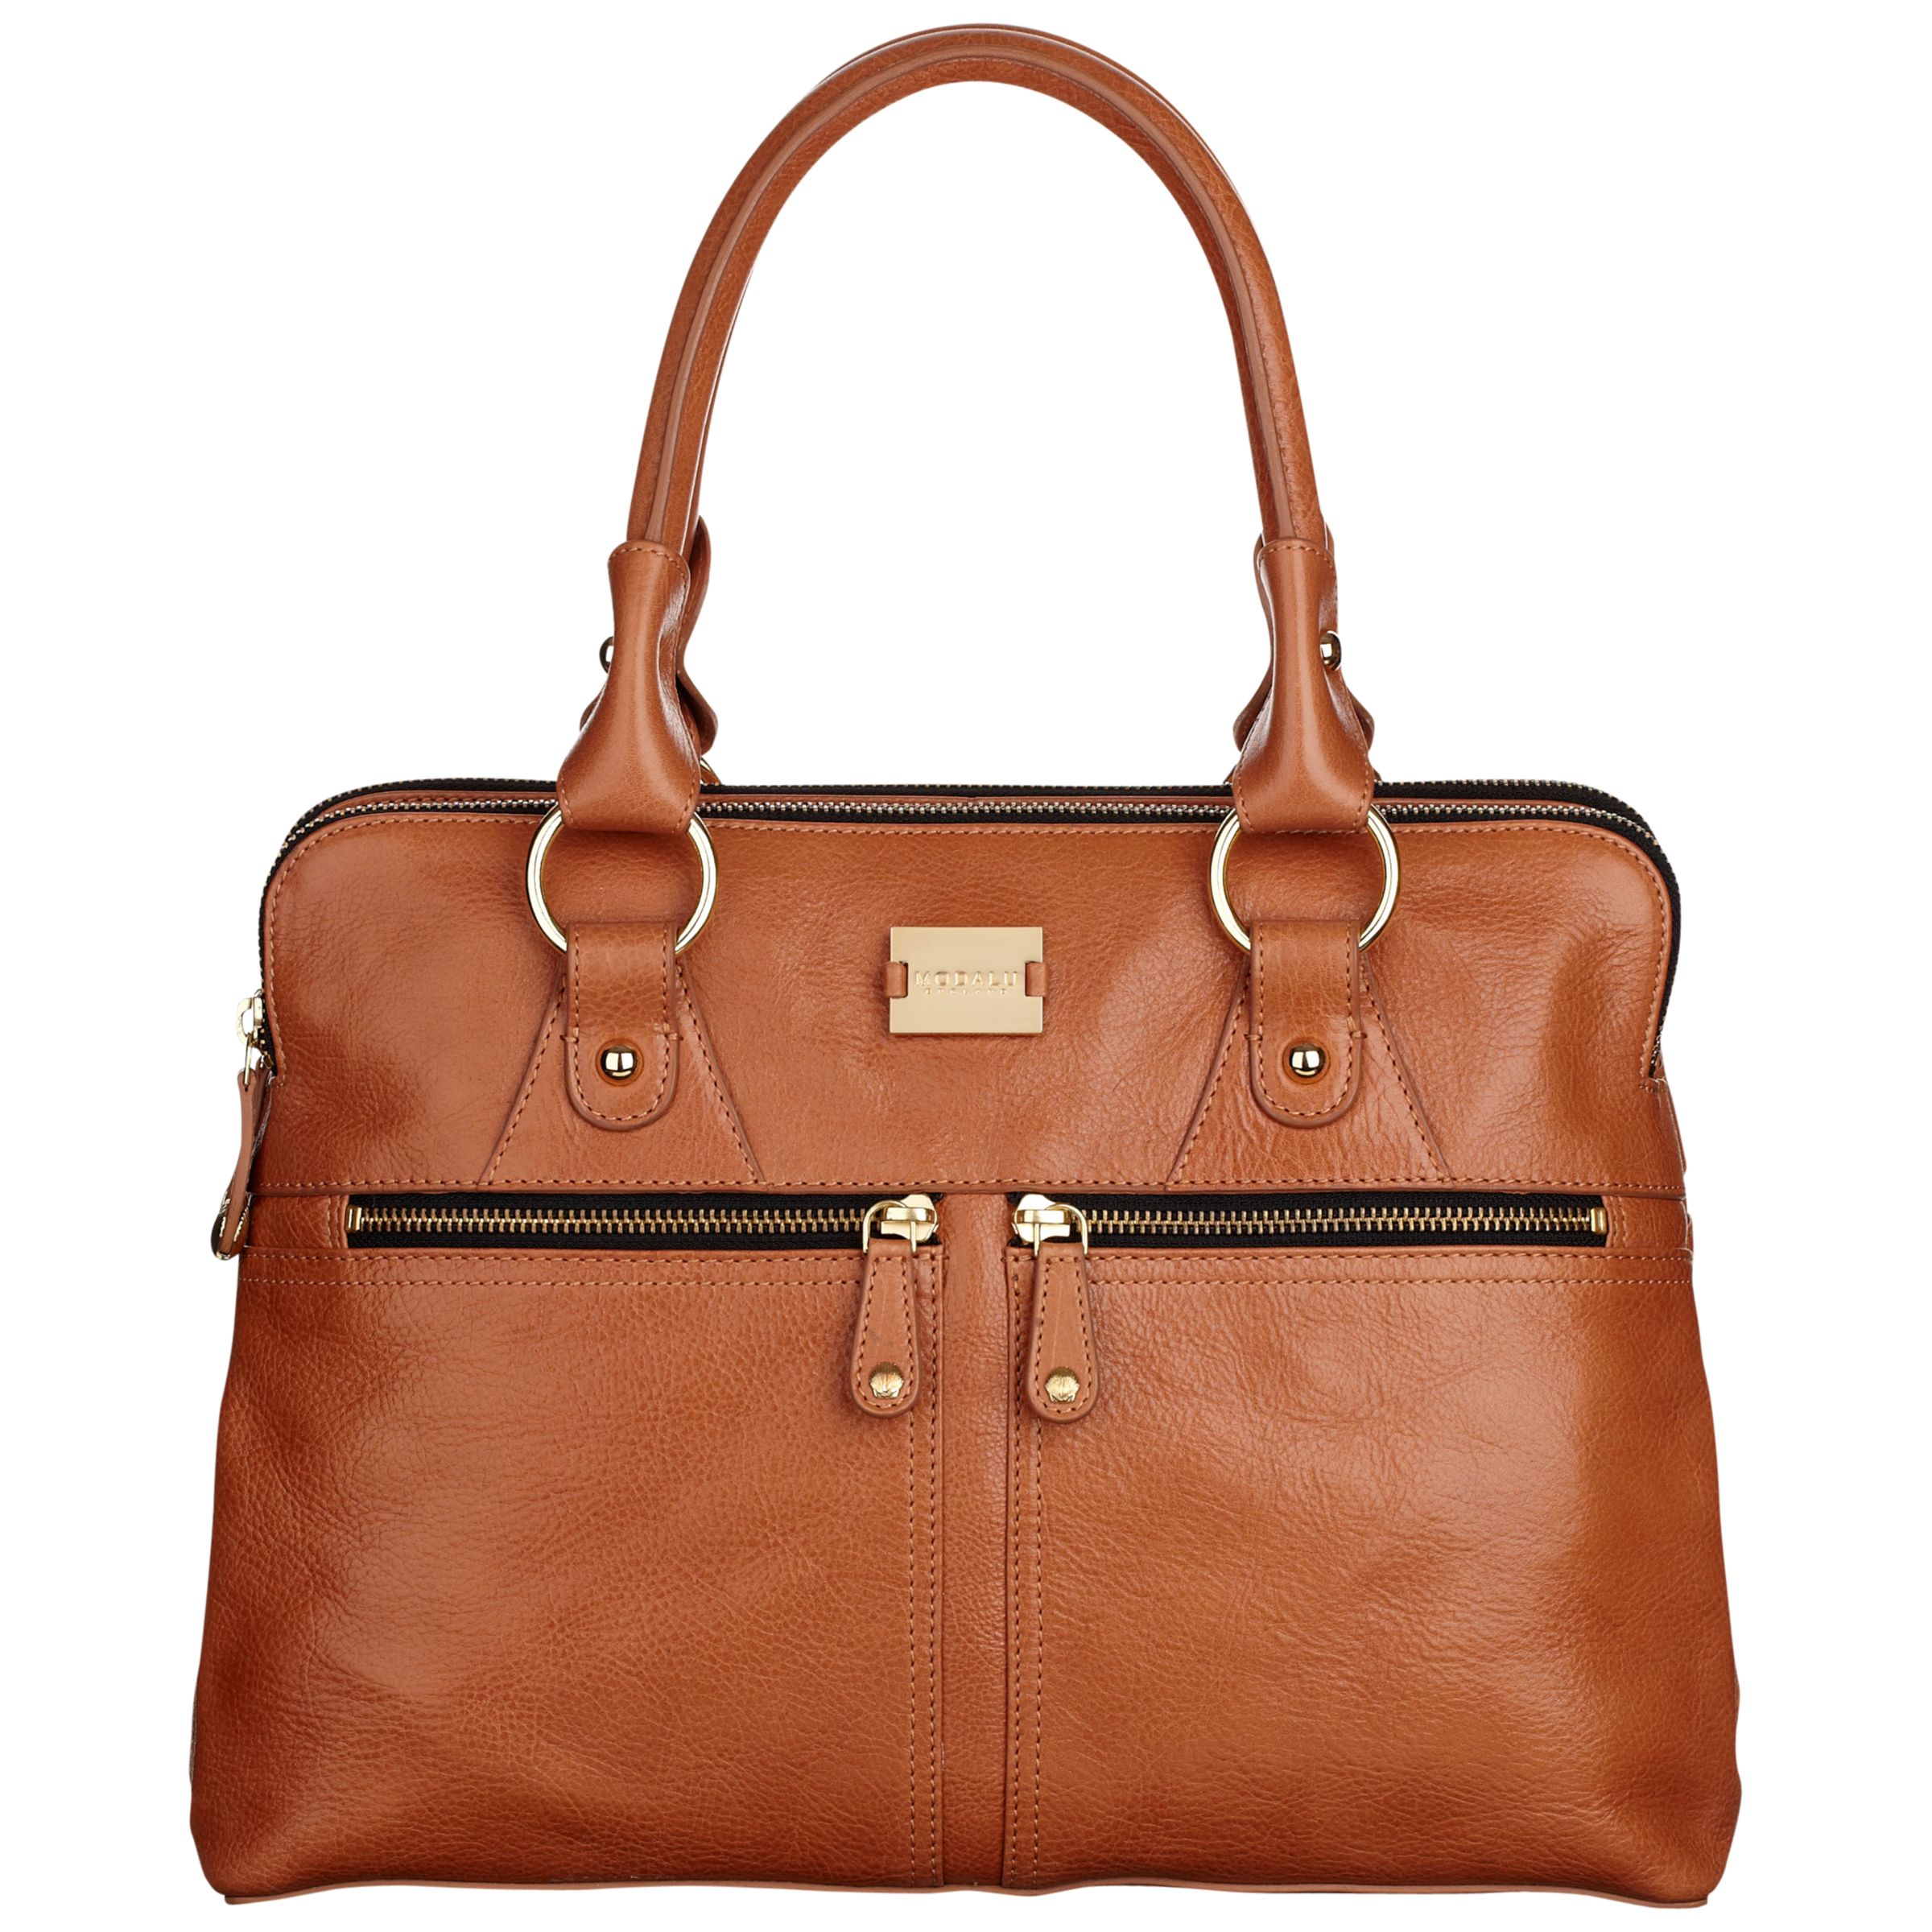 Modalu Pippa Medium Grab Bag, Tan